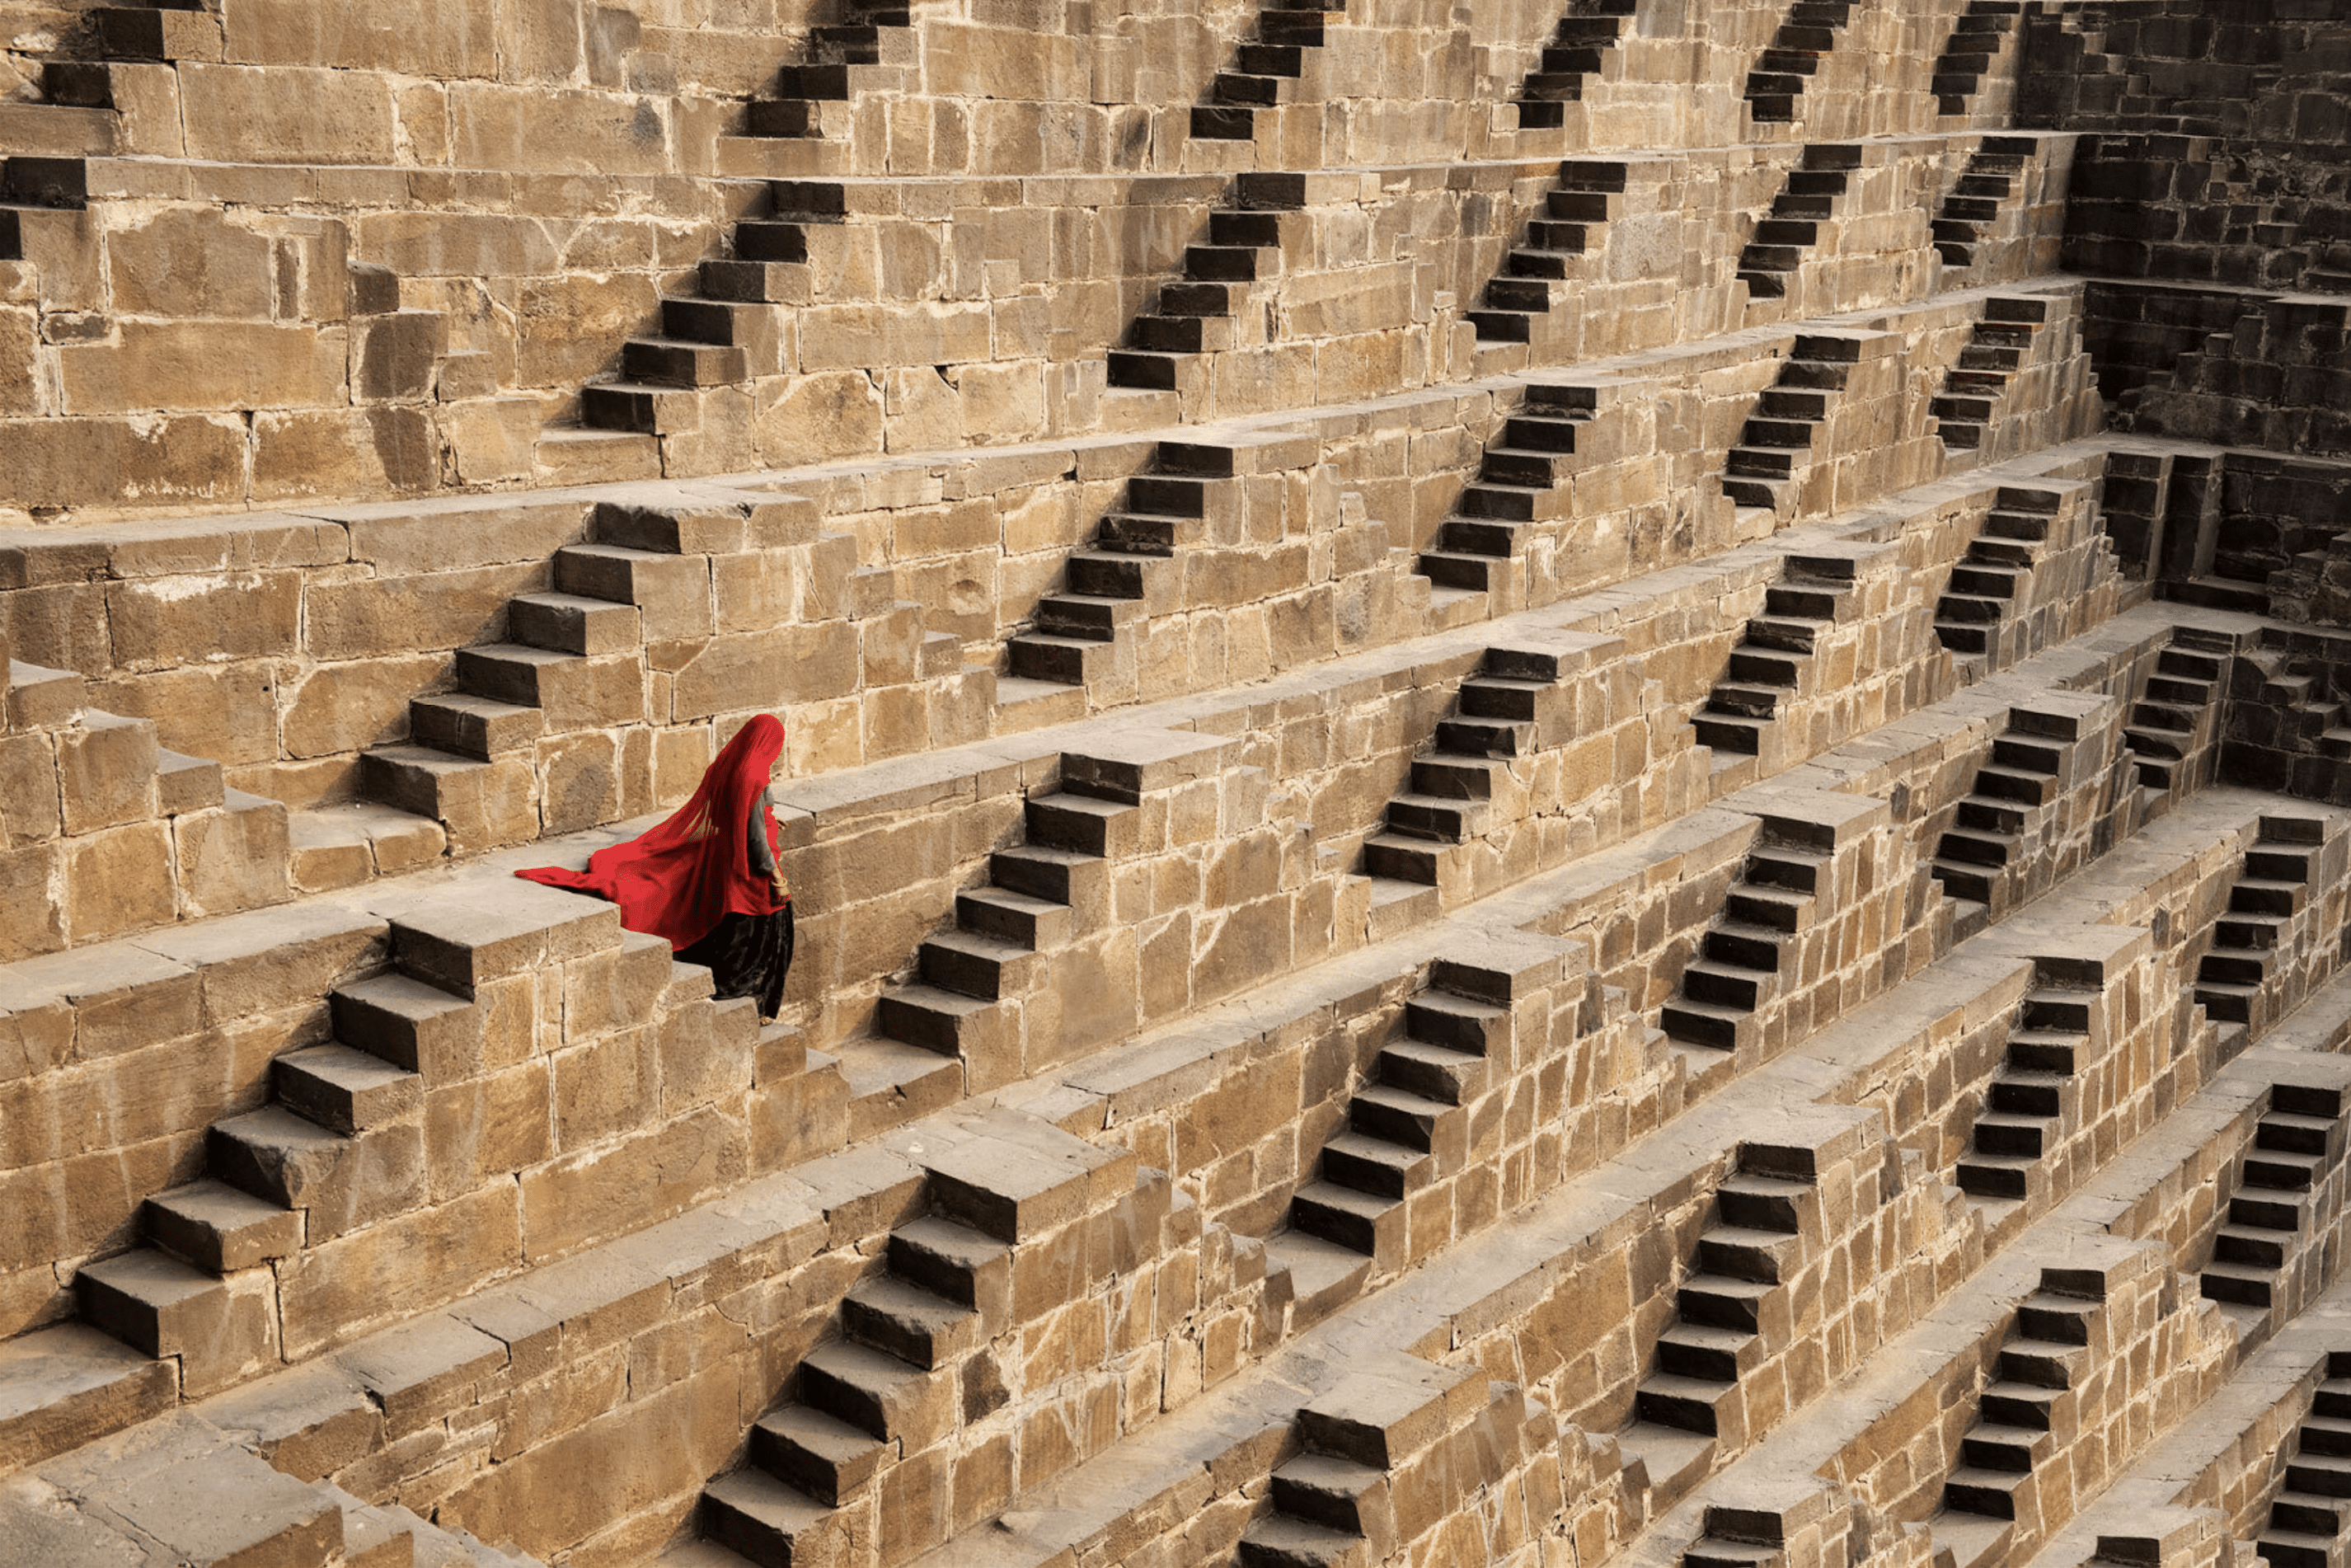 Chand Baori Stepwell, Rajasthan, India, 2016 Steve McCurry